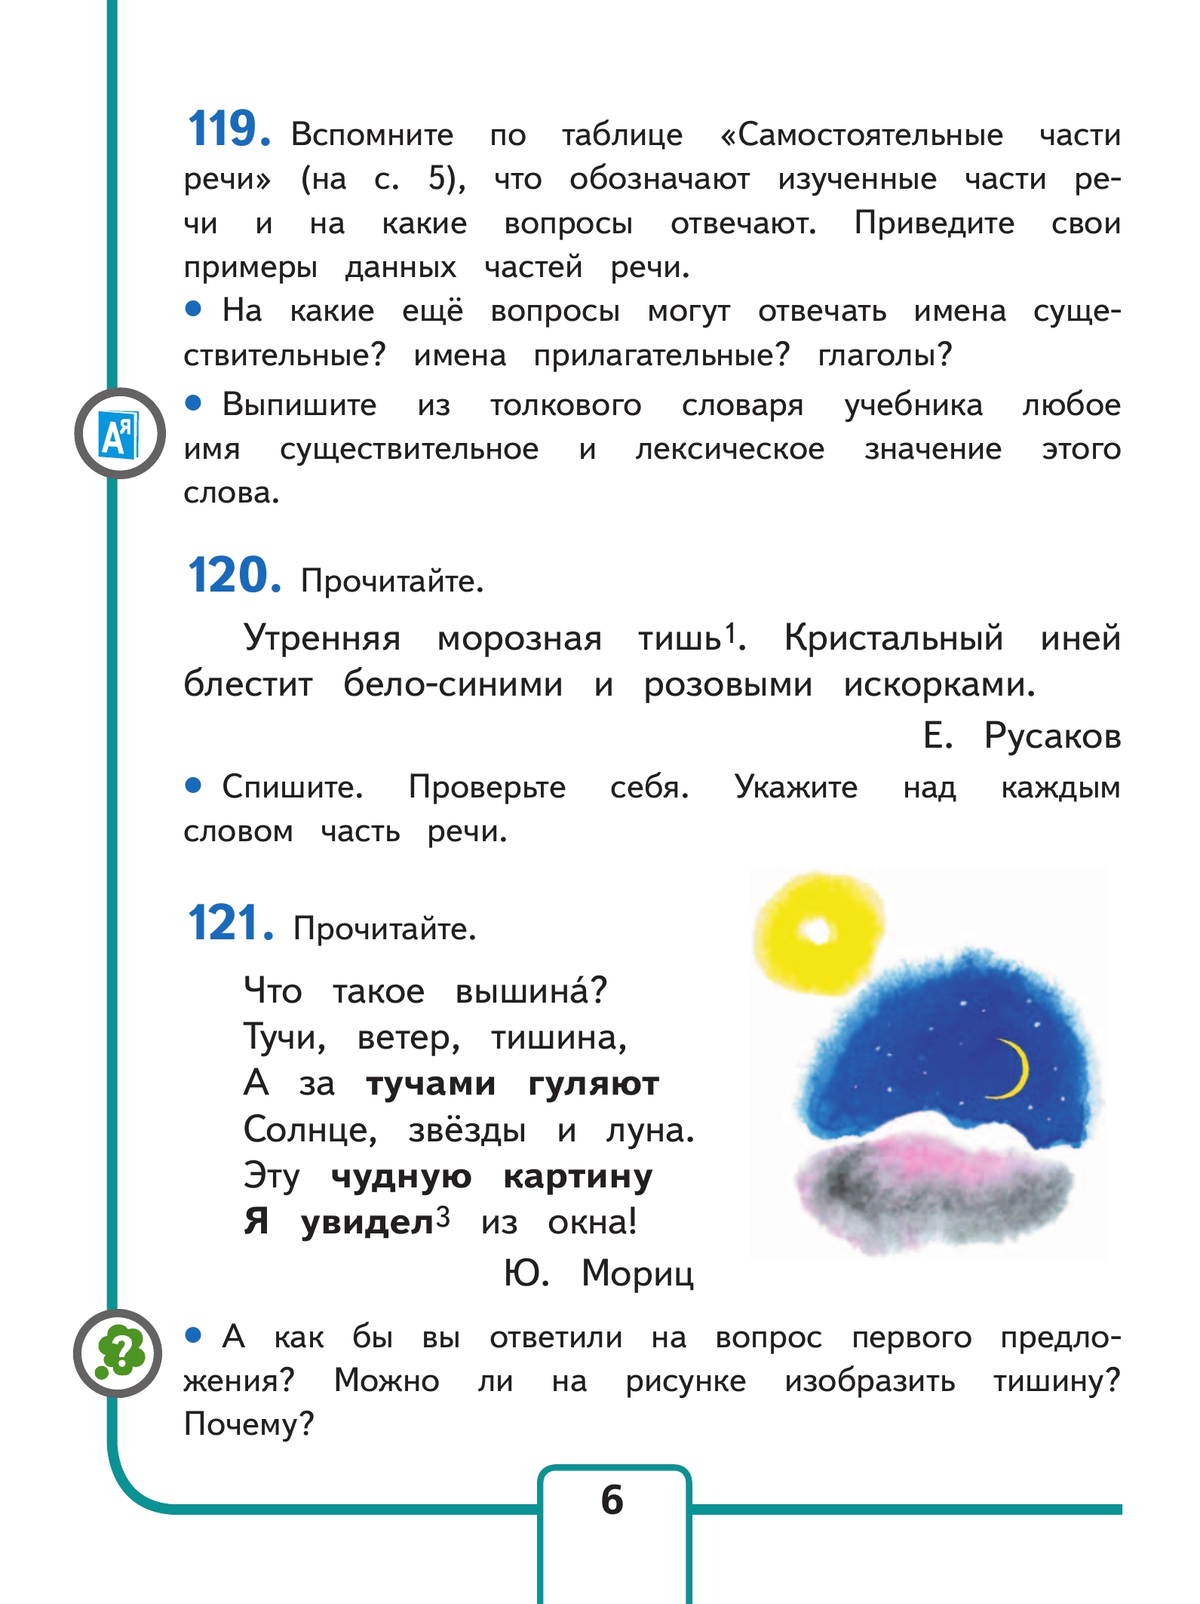 Русский язык. 4 класс. Учебное пособие. В 5 ч. Часть 2 (для слабовидящих обучающихся) 5